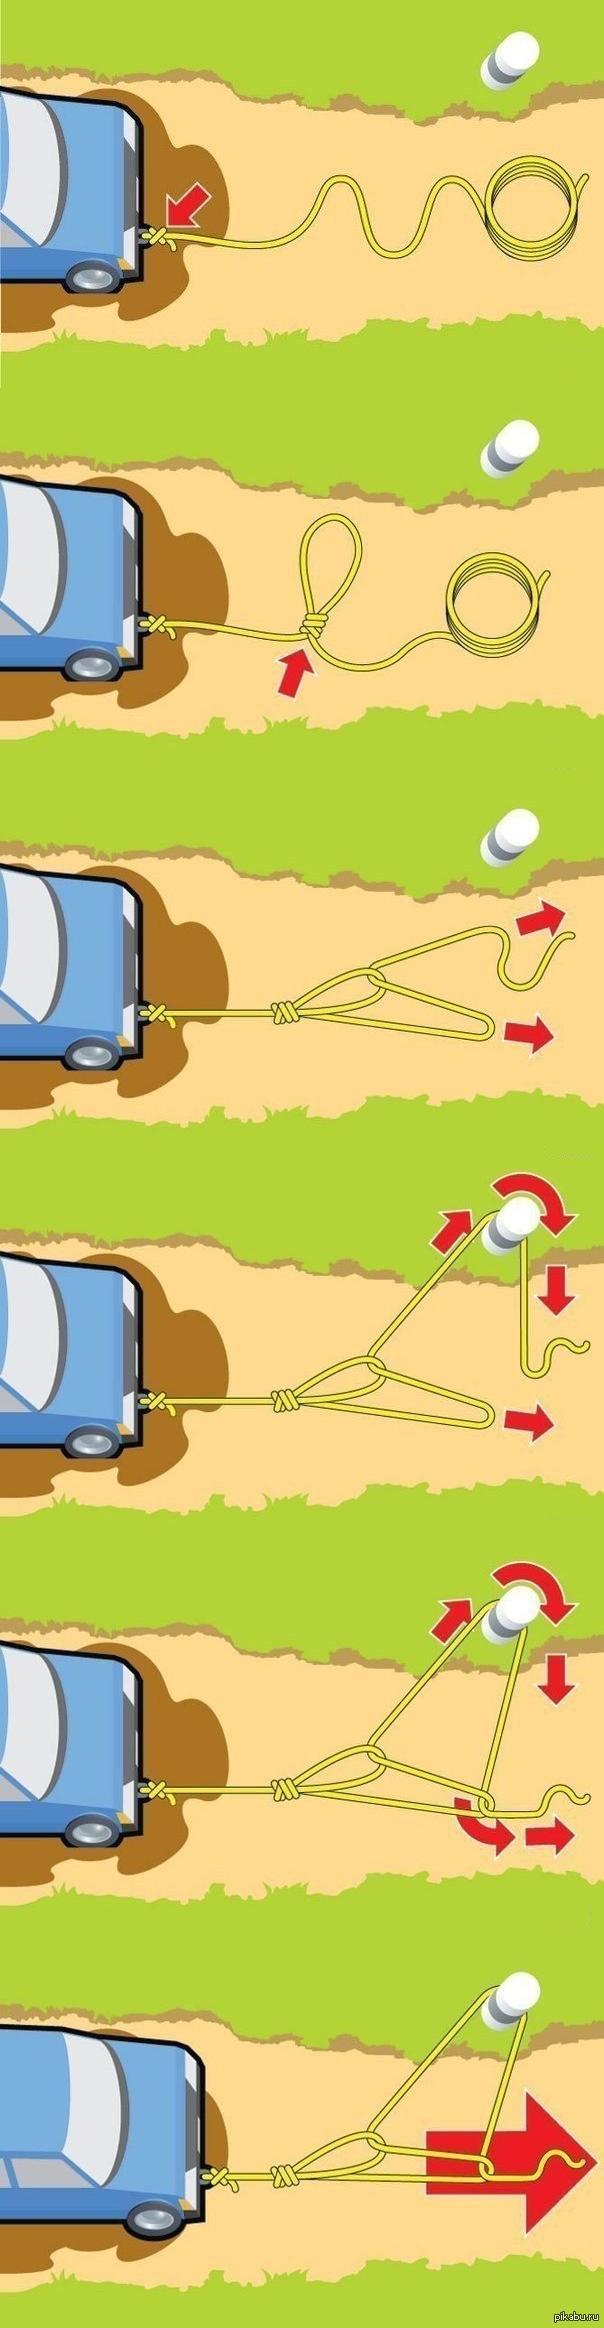 12 советов, чтобы выбраться из грязи, если автомобиль застрял